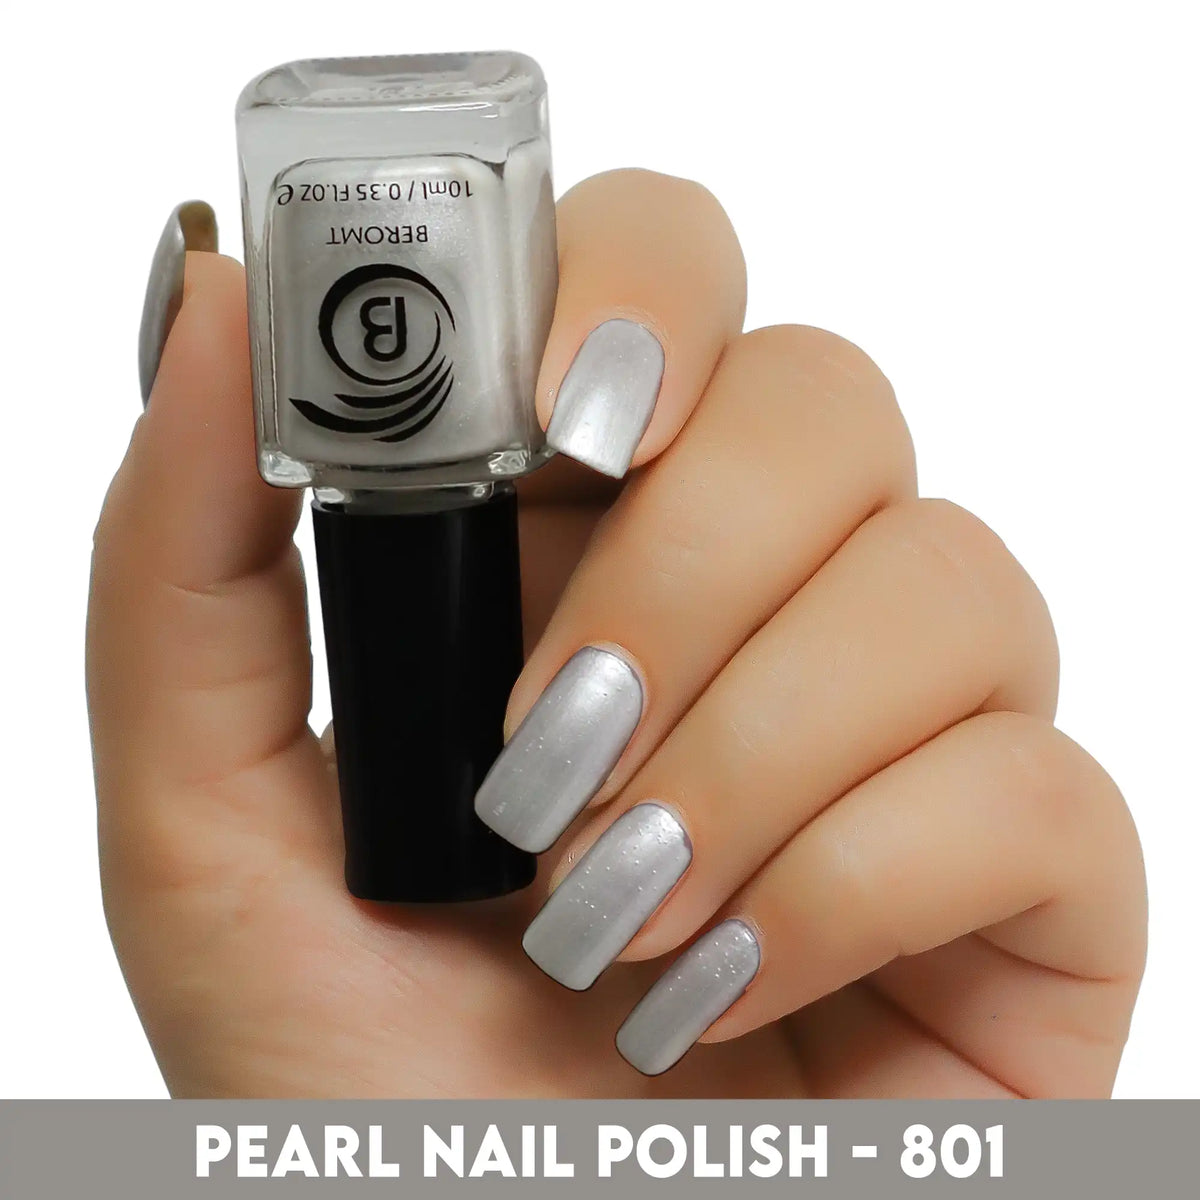 PEARL NAIL POLISH - 801